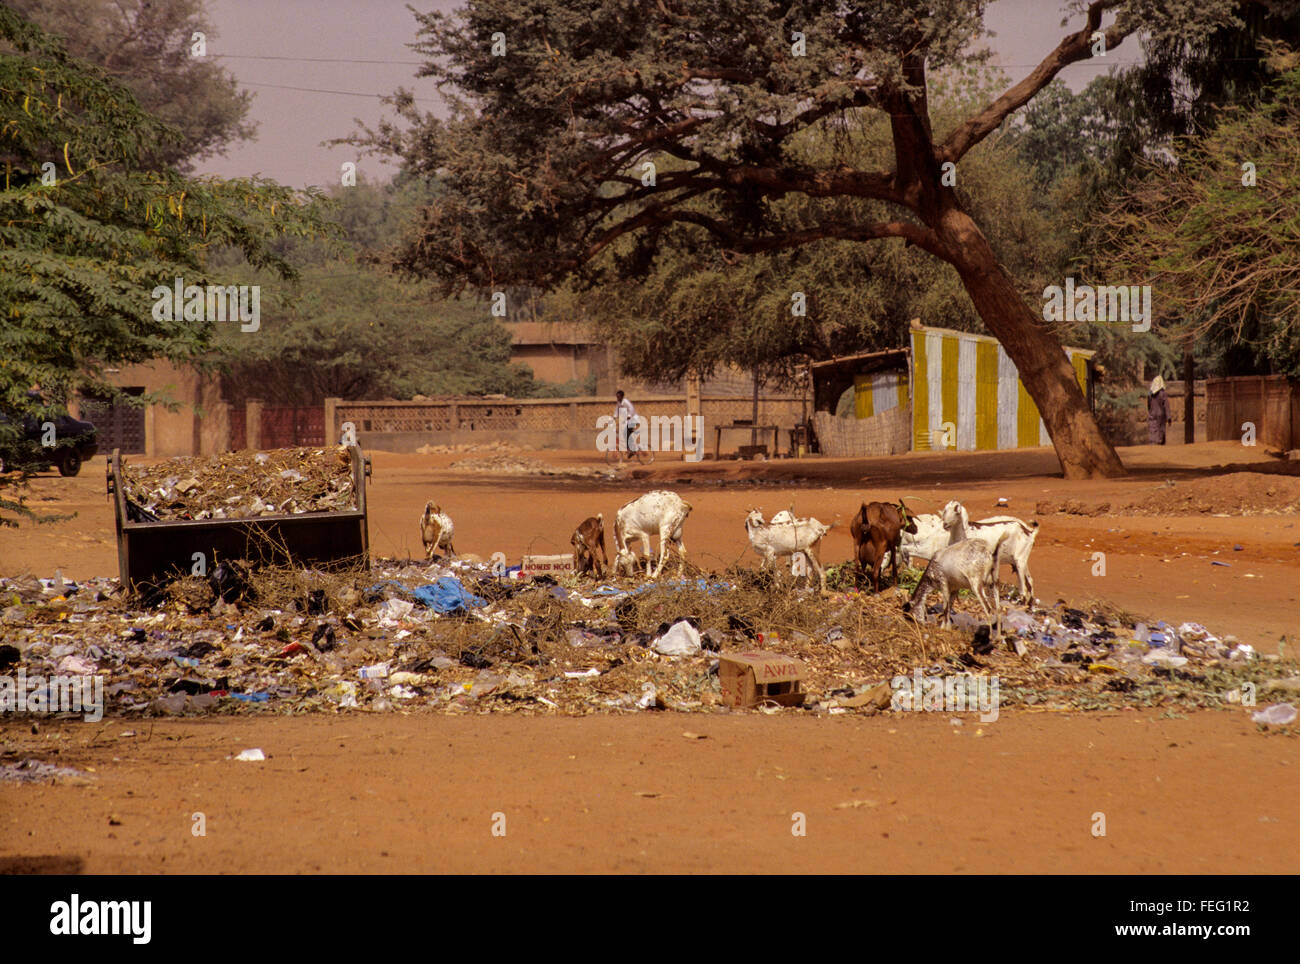 Niamey, Niger. Recyclage des déchets quartier chèvres benne à ordures débordant. Banque D'Images